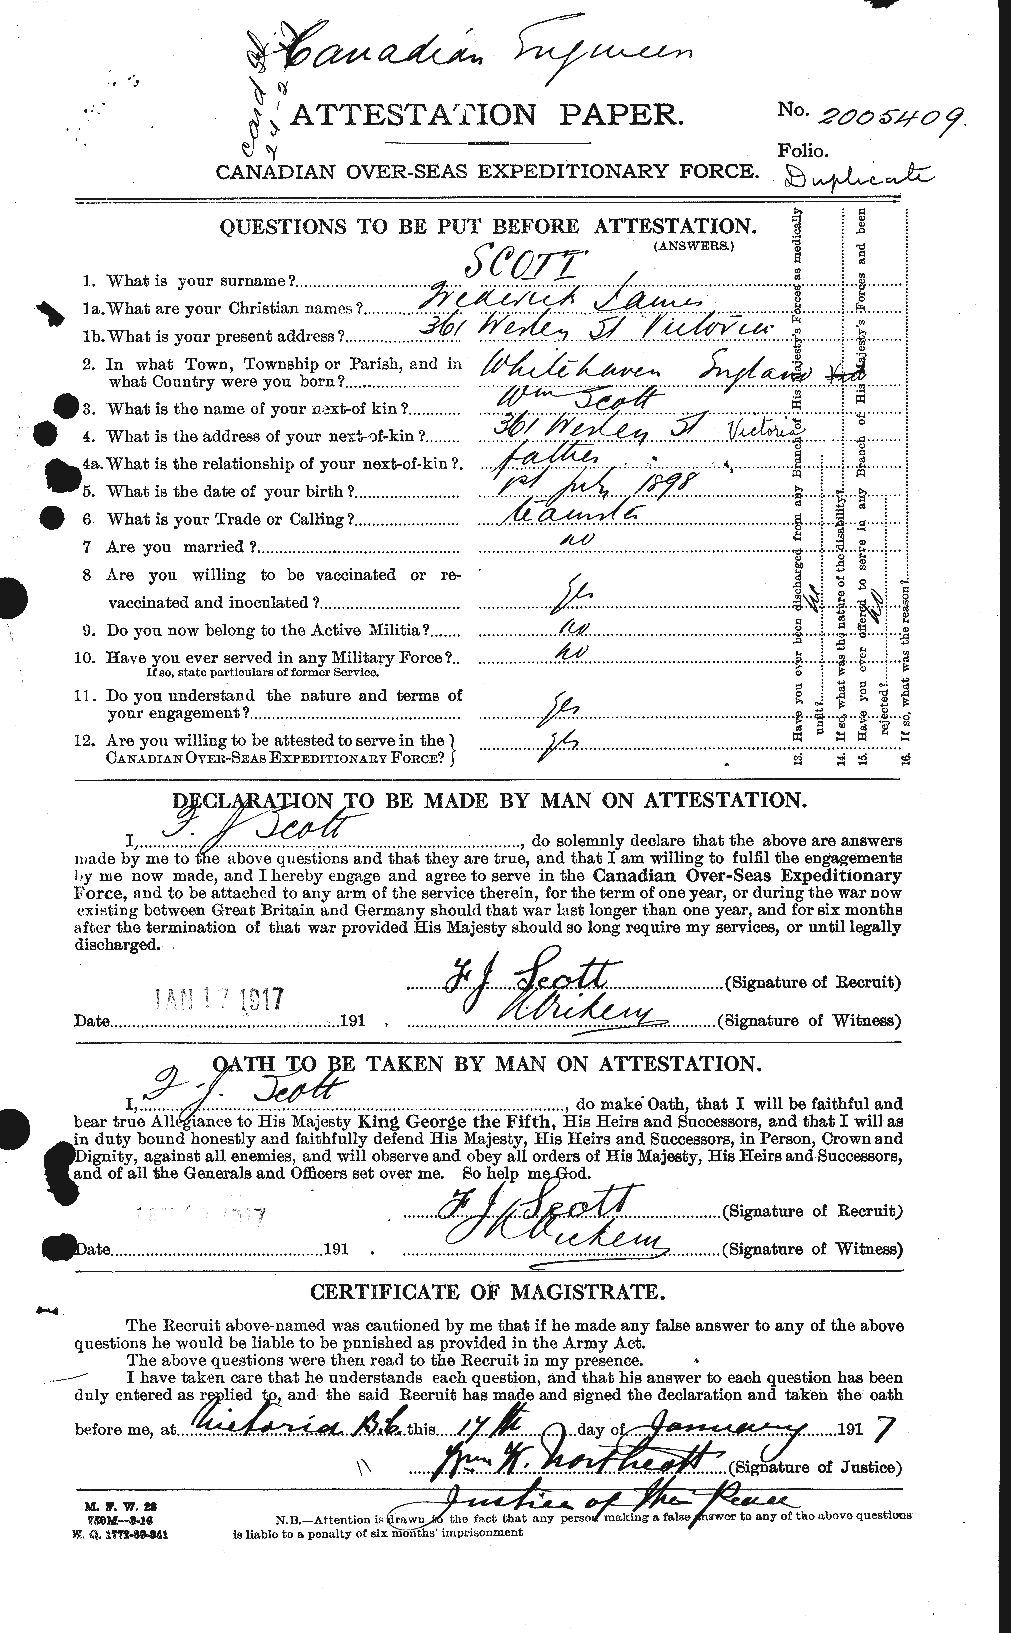 Dossiers du Personnel de la Première Guerre mondiale - CEC 084387a